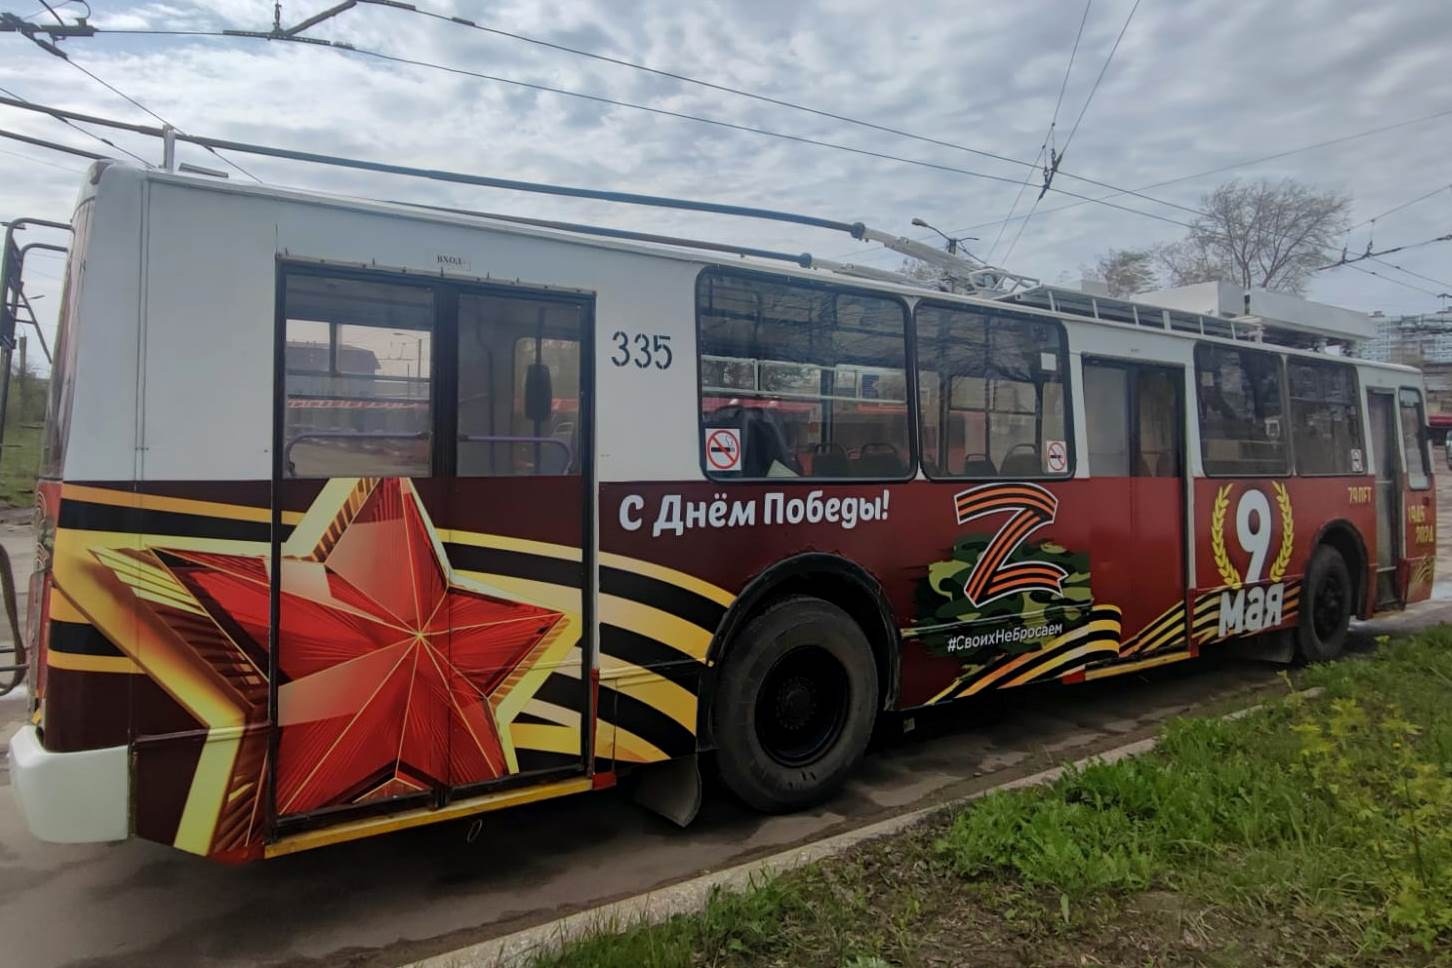 Жители и гости Иванова смогут прокатиться на троллейбусе Победы 